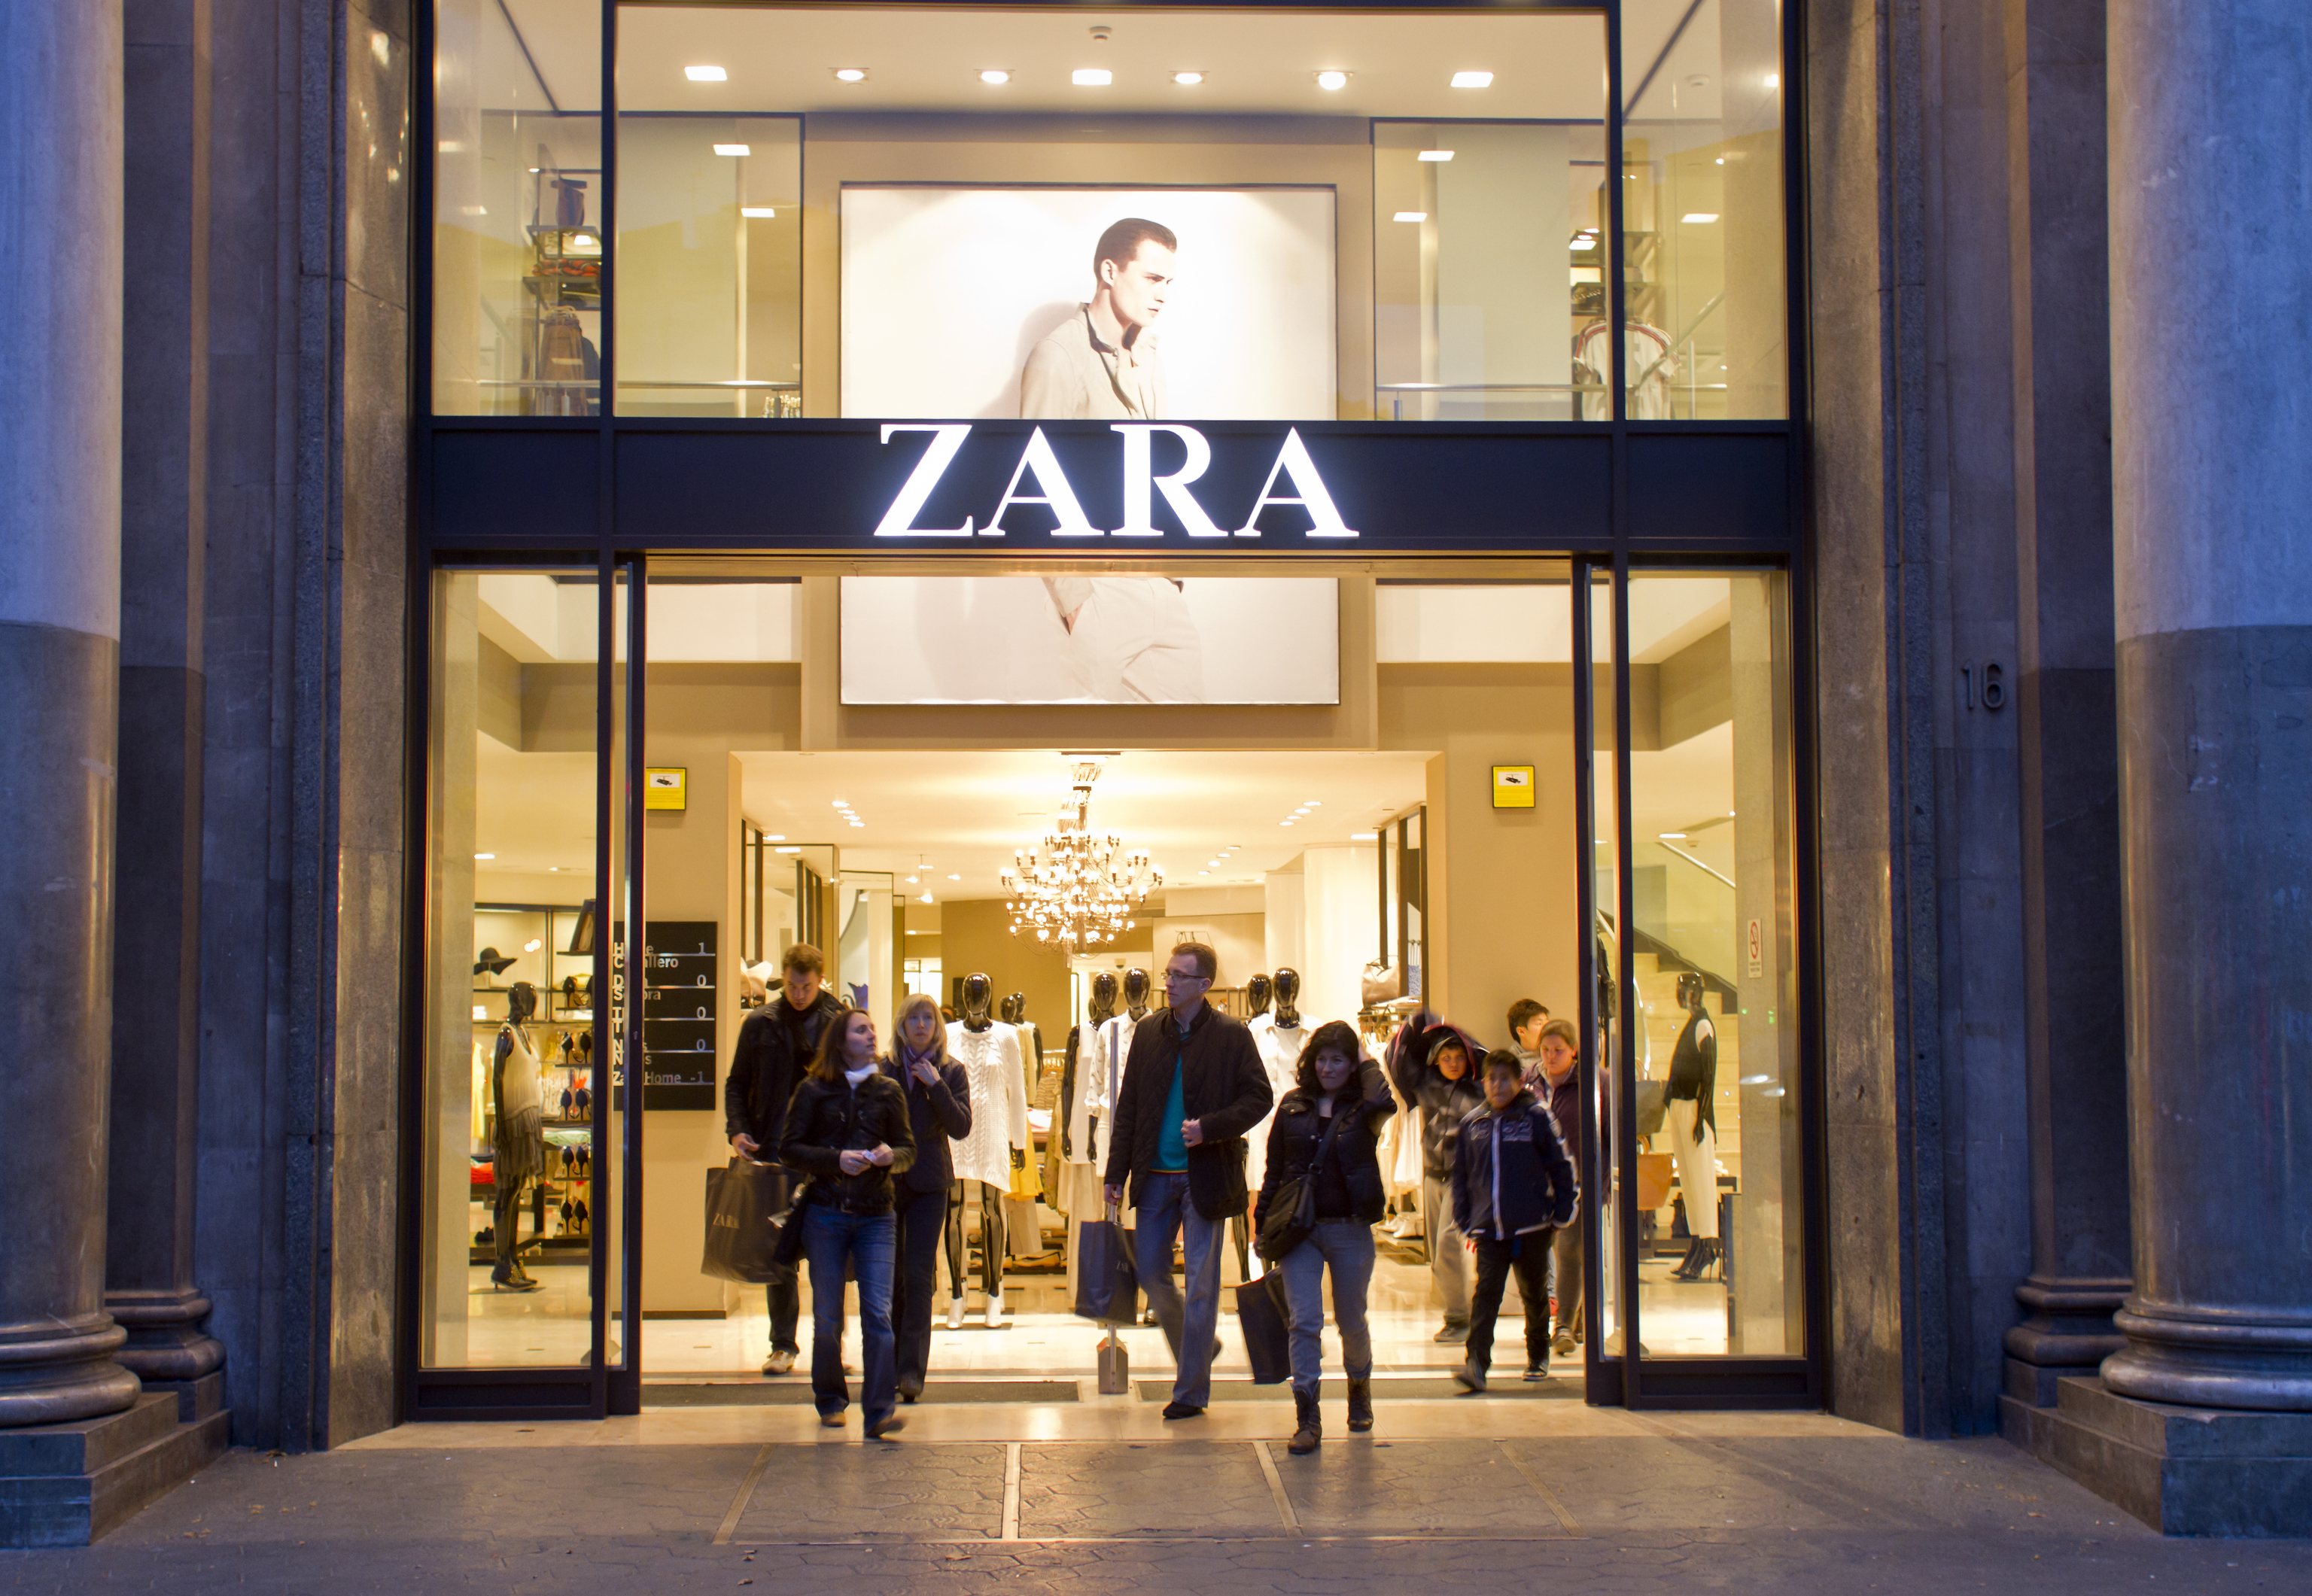 Acceso principal a una tienda de la marca Zara del grupo Inditex.